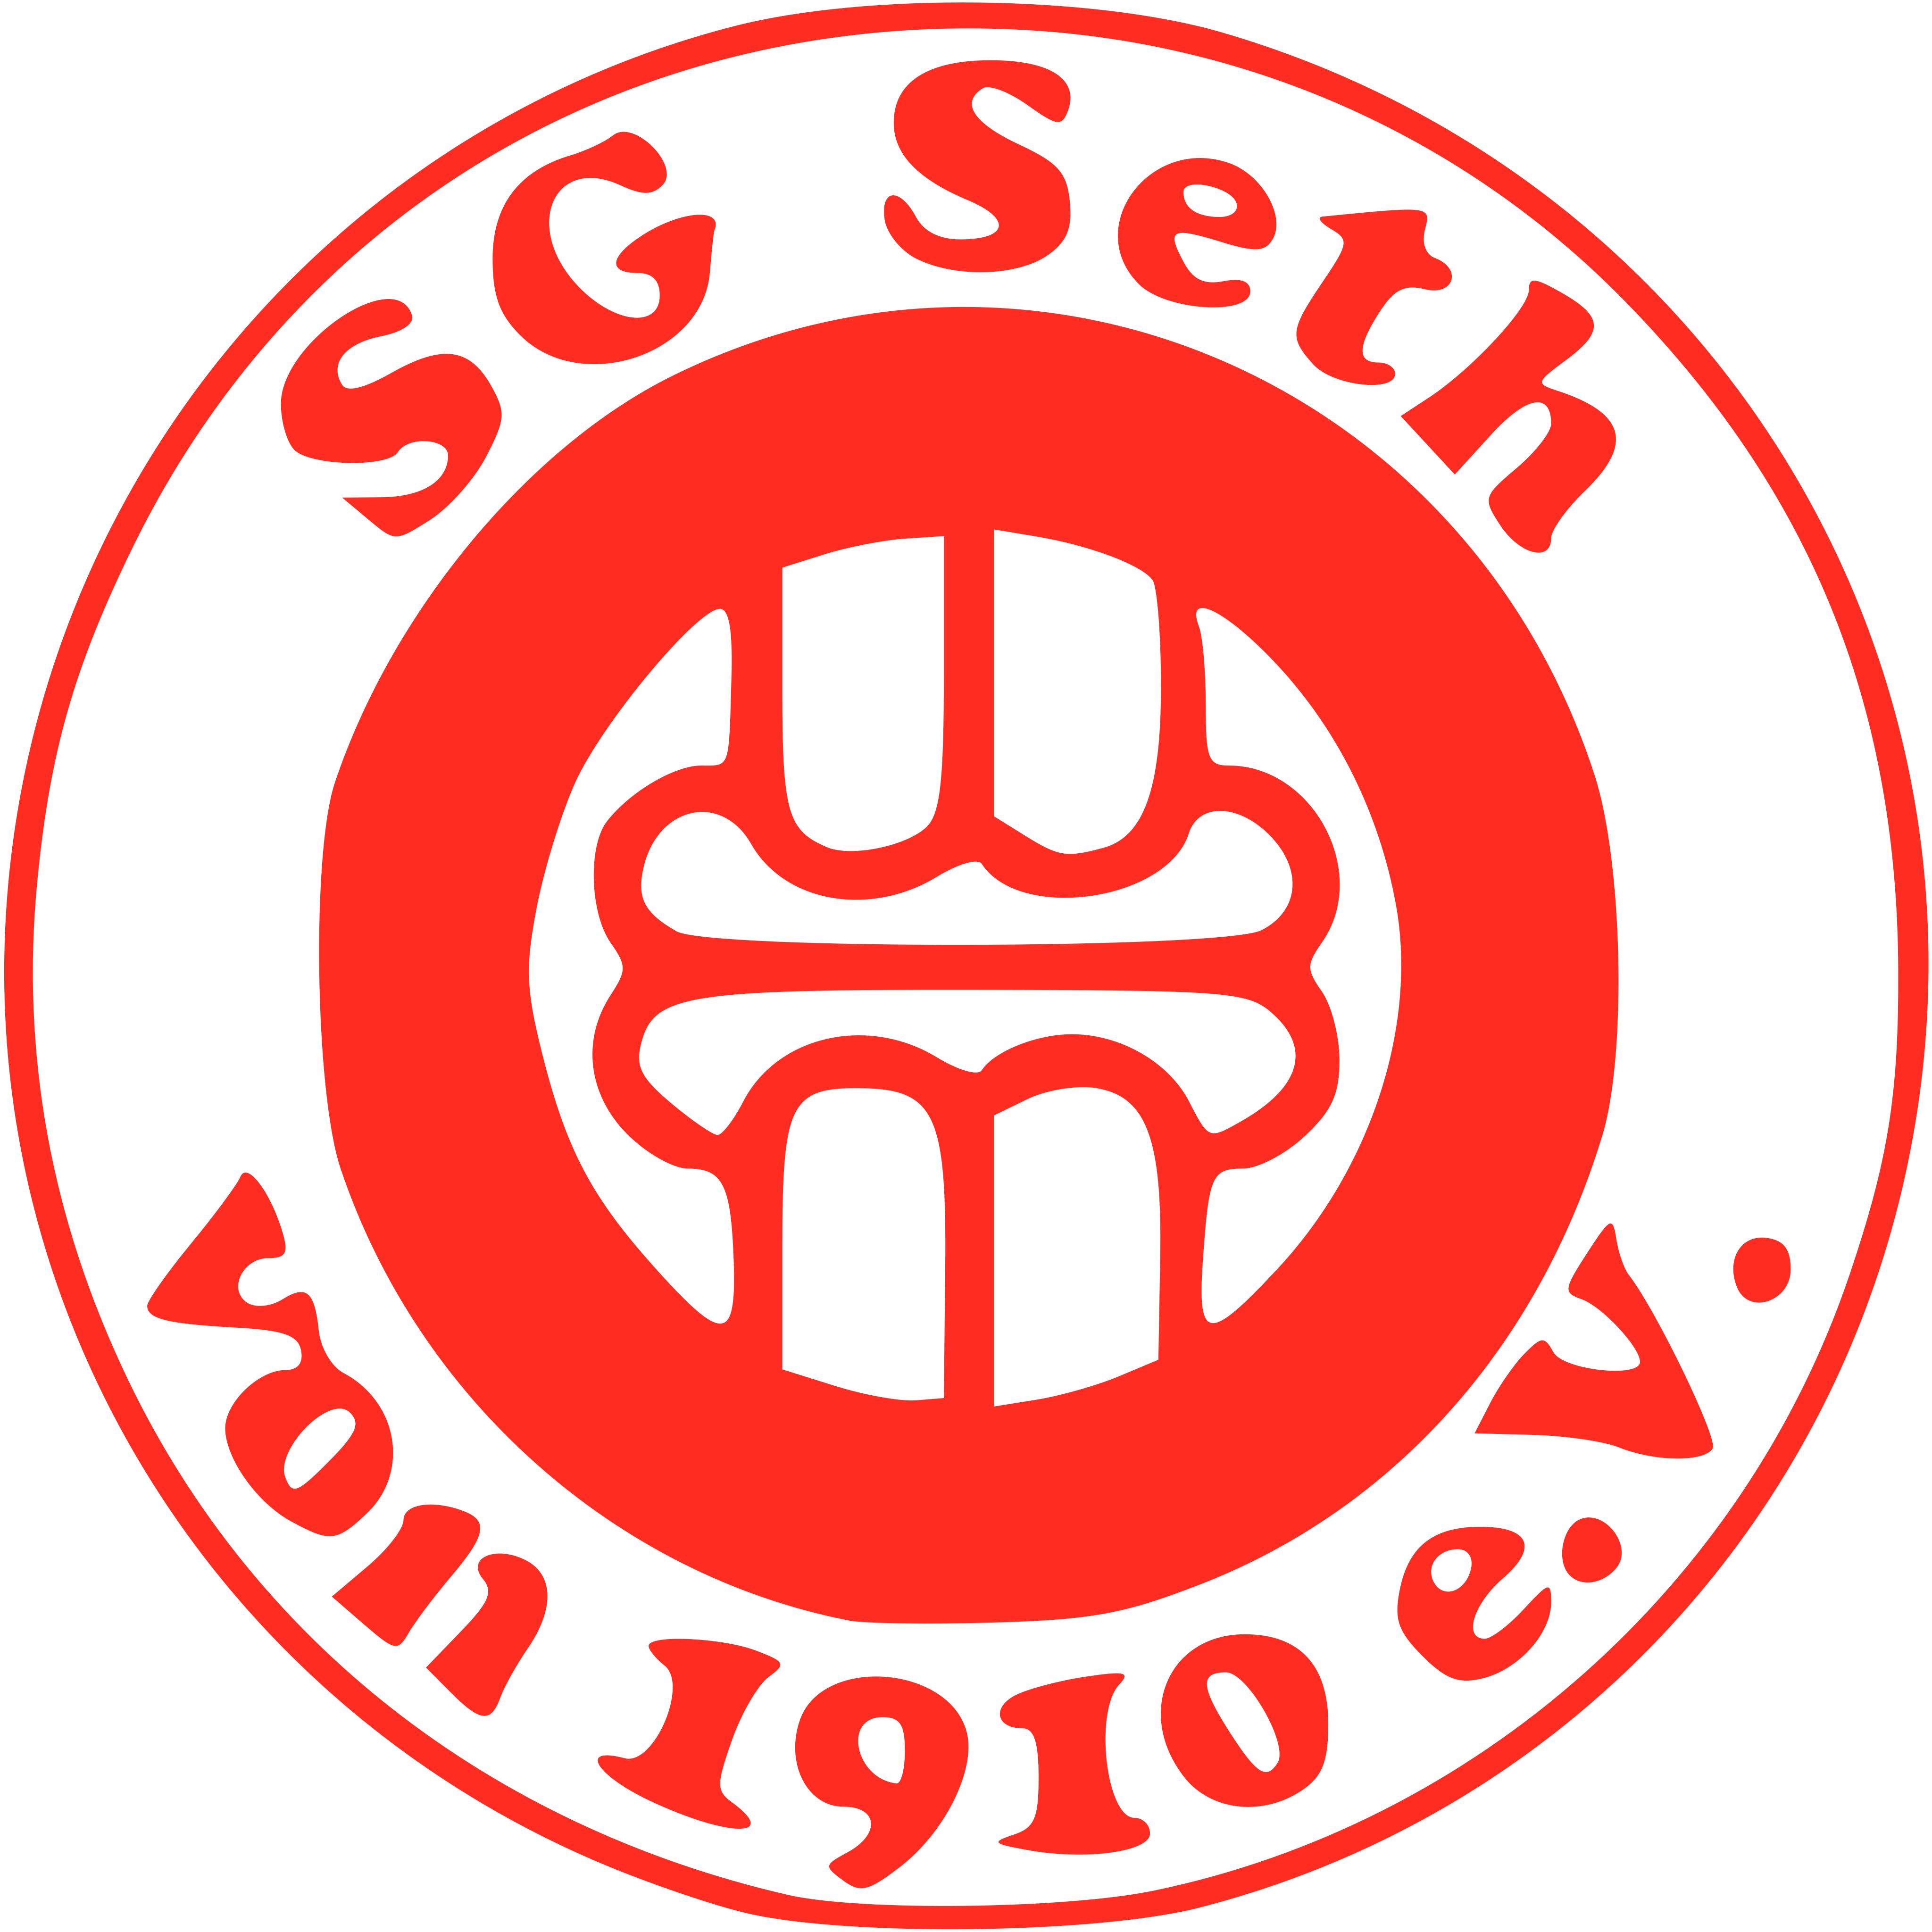 SG Seth